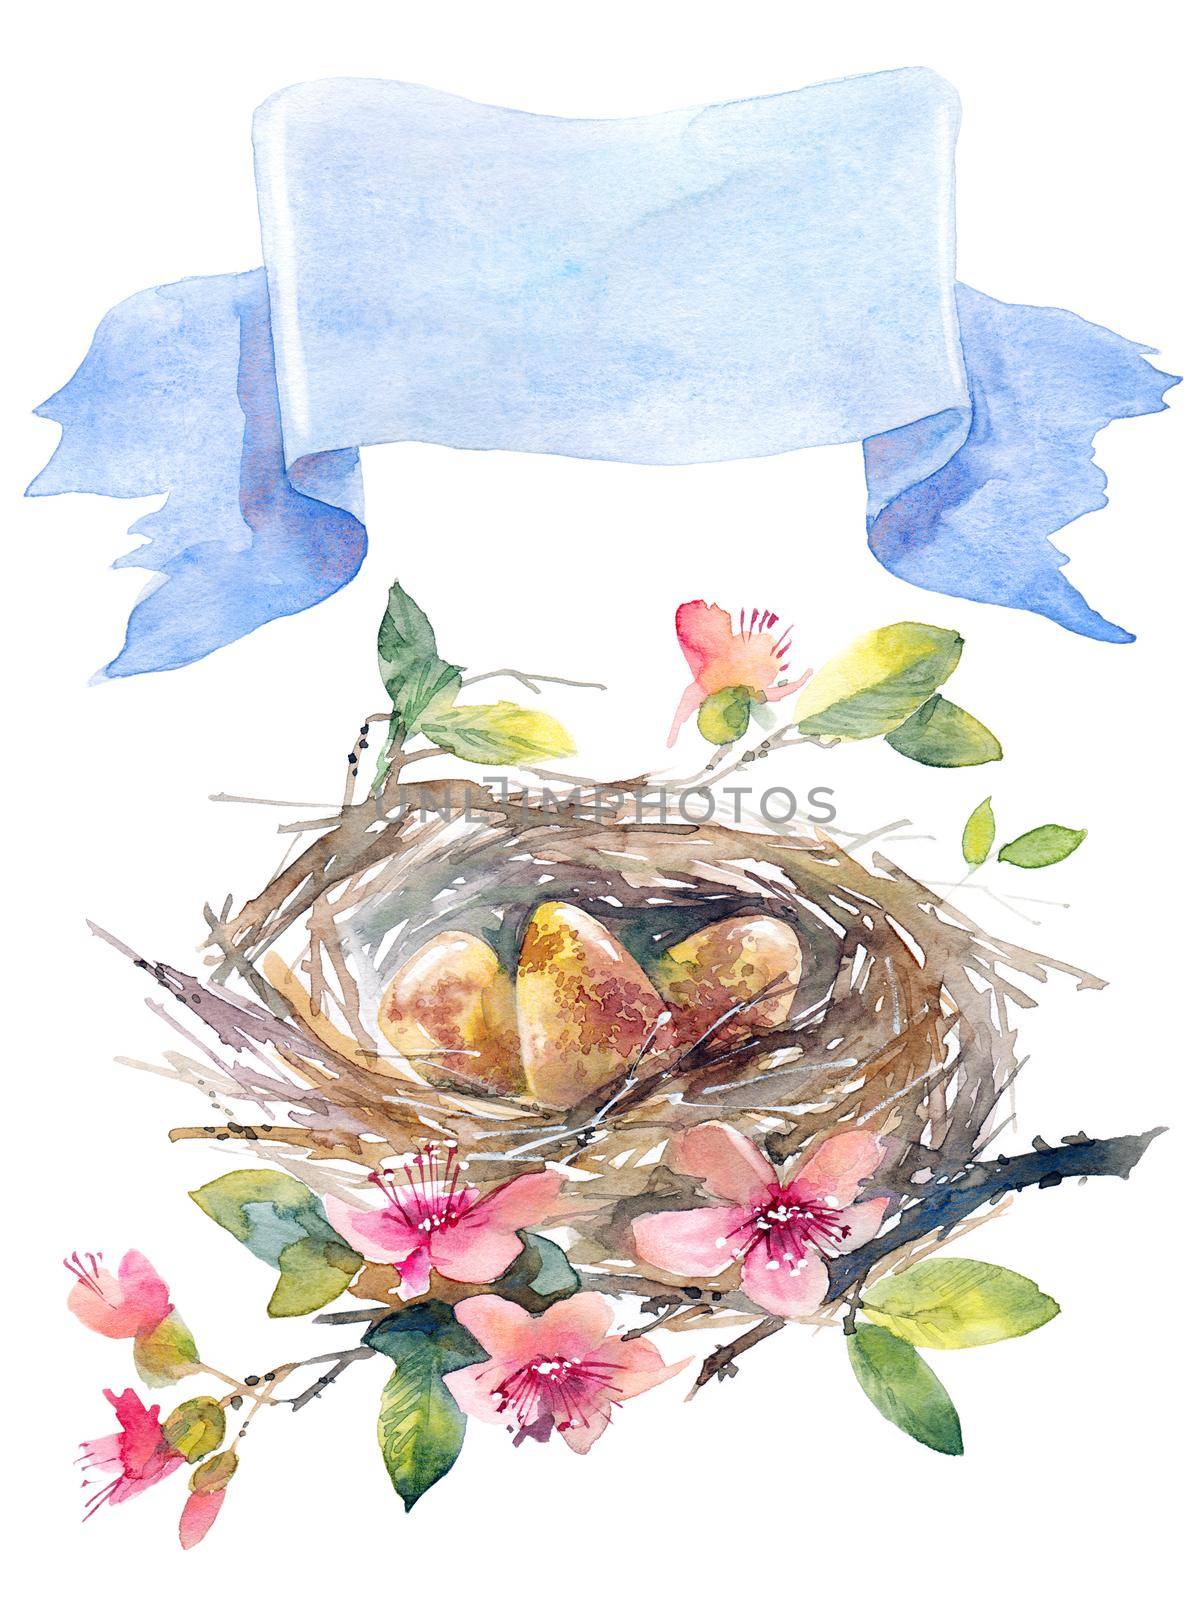 Happy Easter greeting card by Olatarakanova